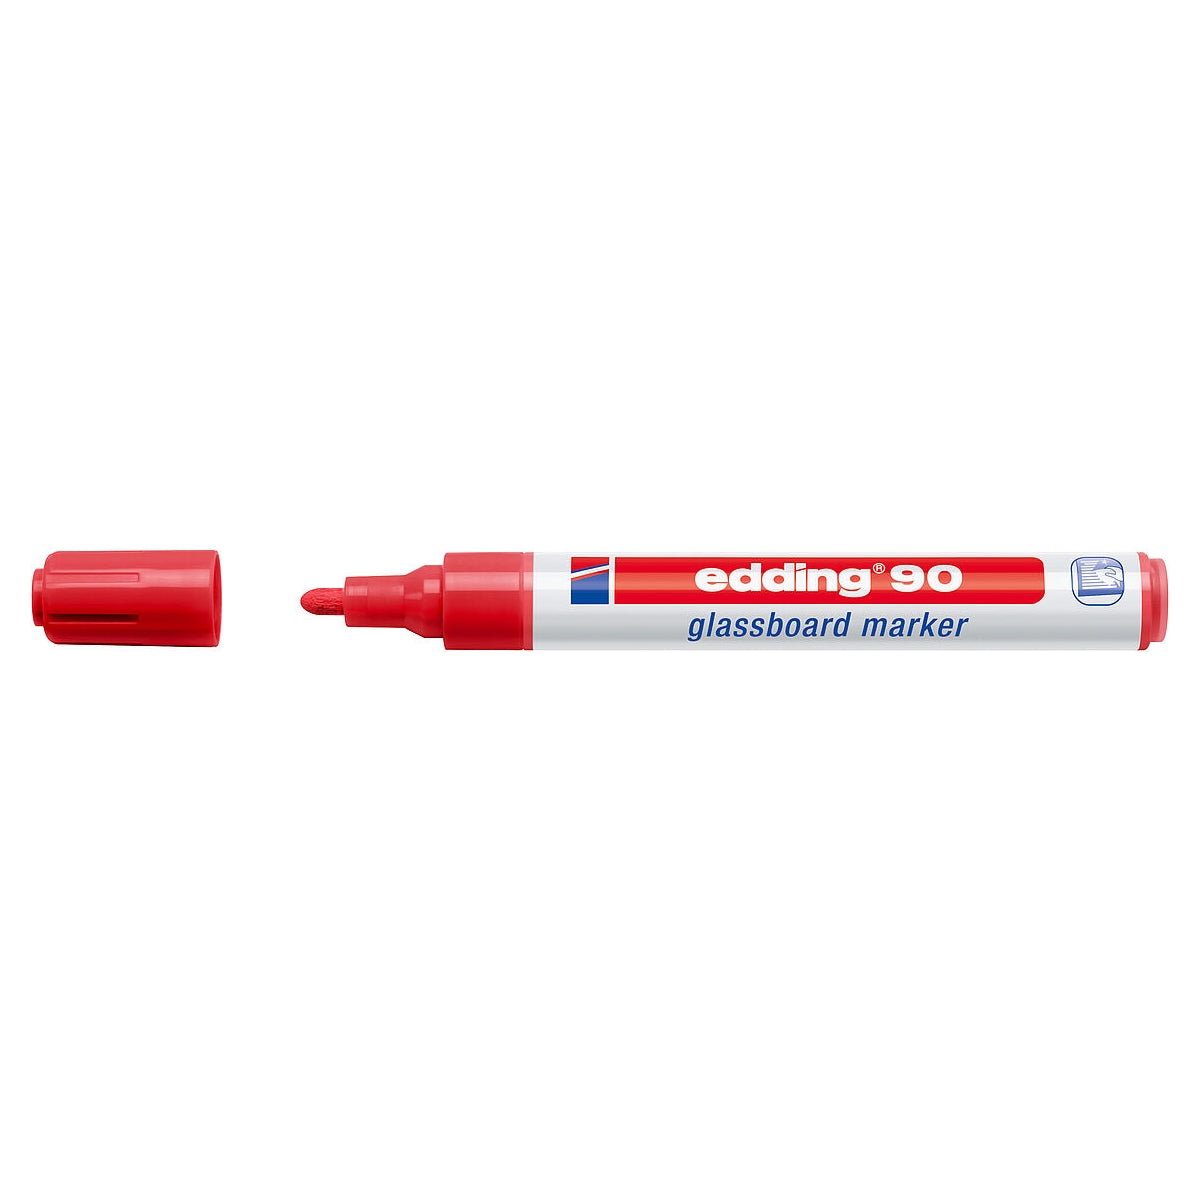 edding 90 Glassboard Marker, 2-3mm Bullet Tip, Red